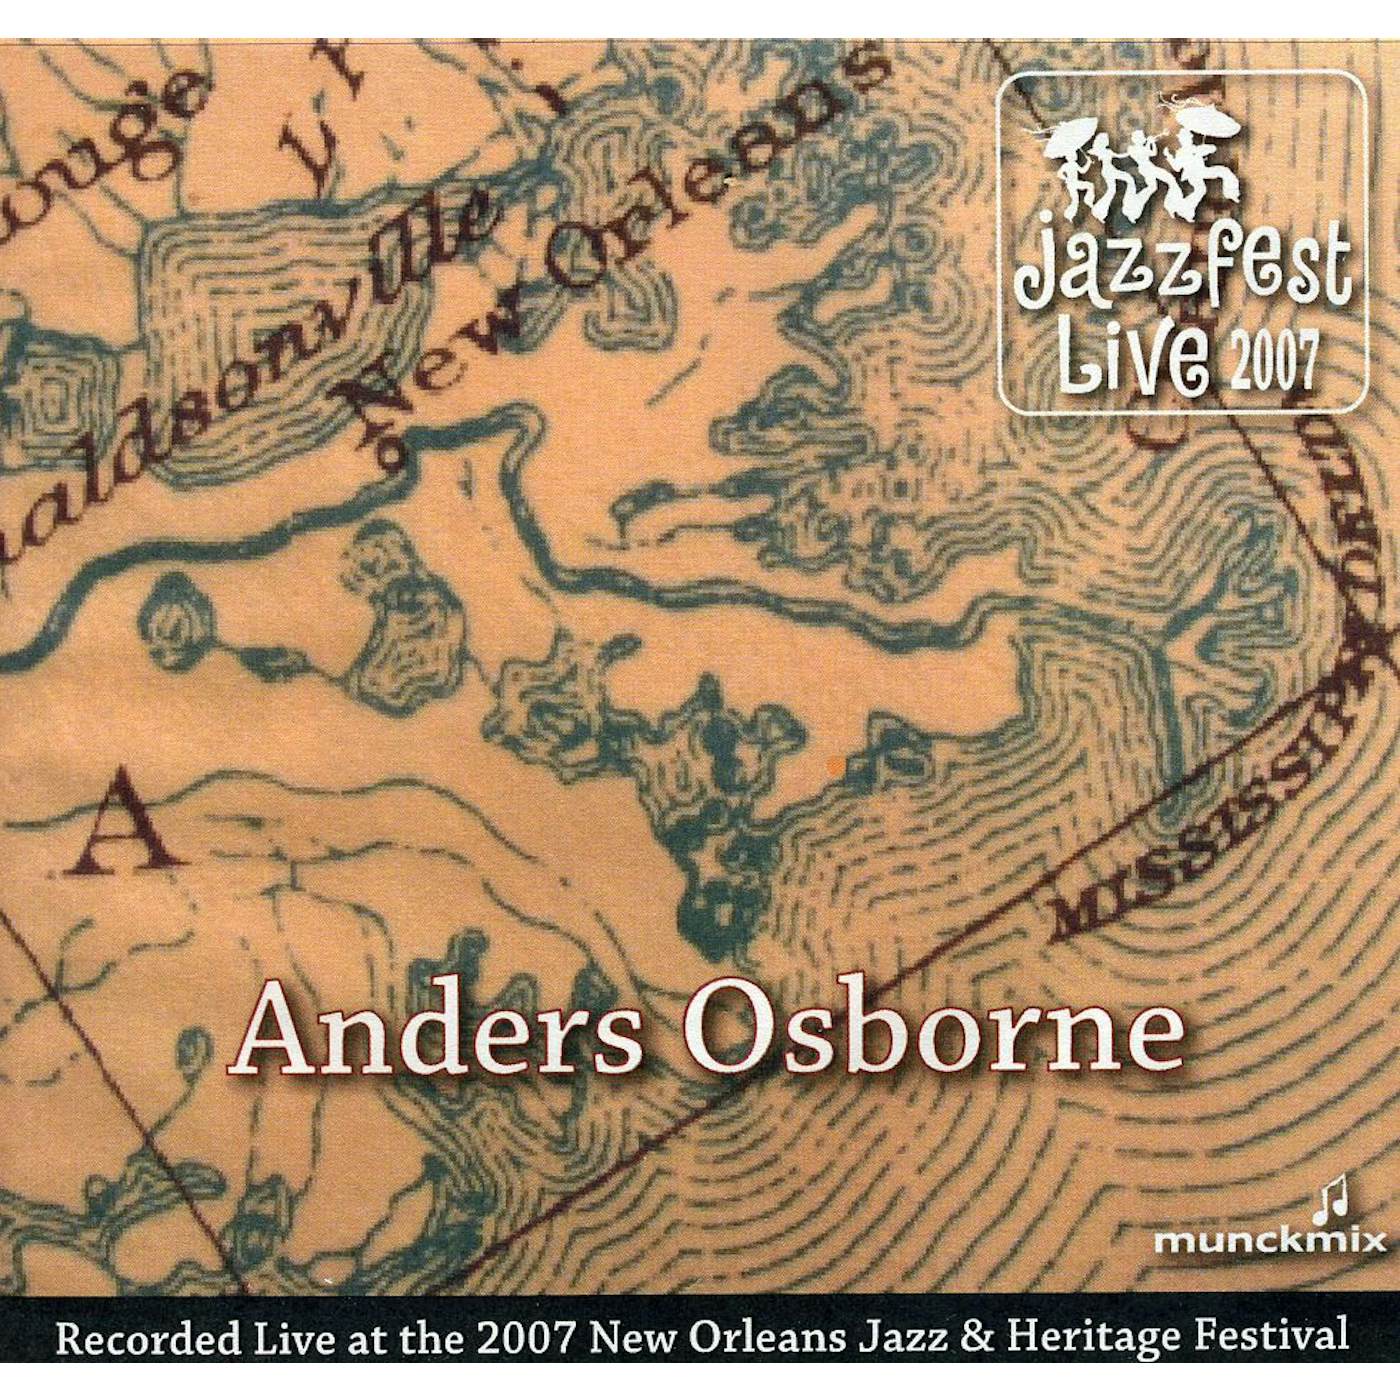 Anders Osborne JAZZ FEST 2007 CD